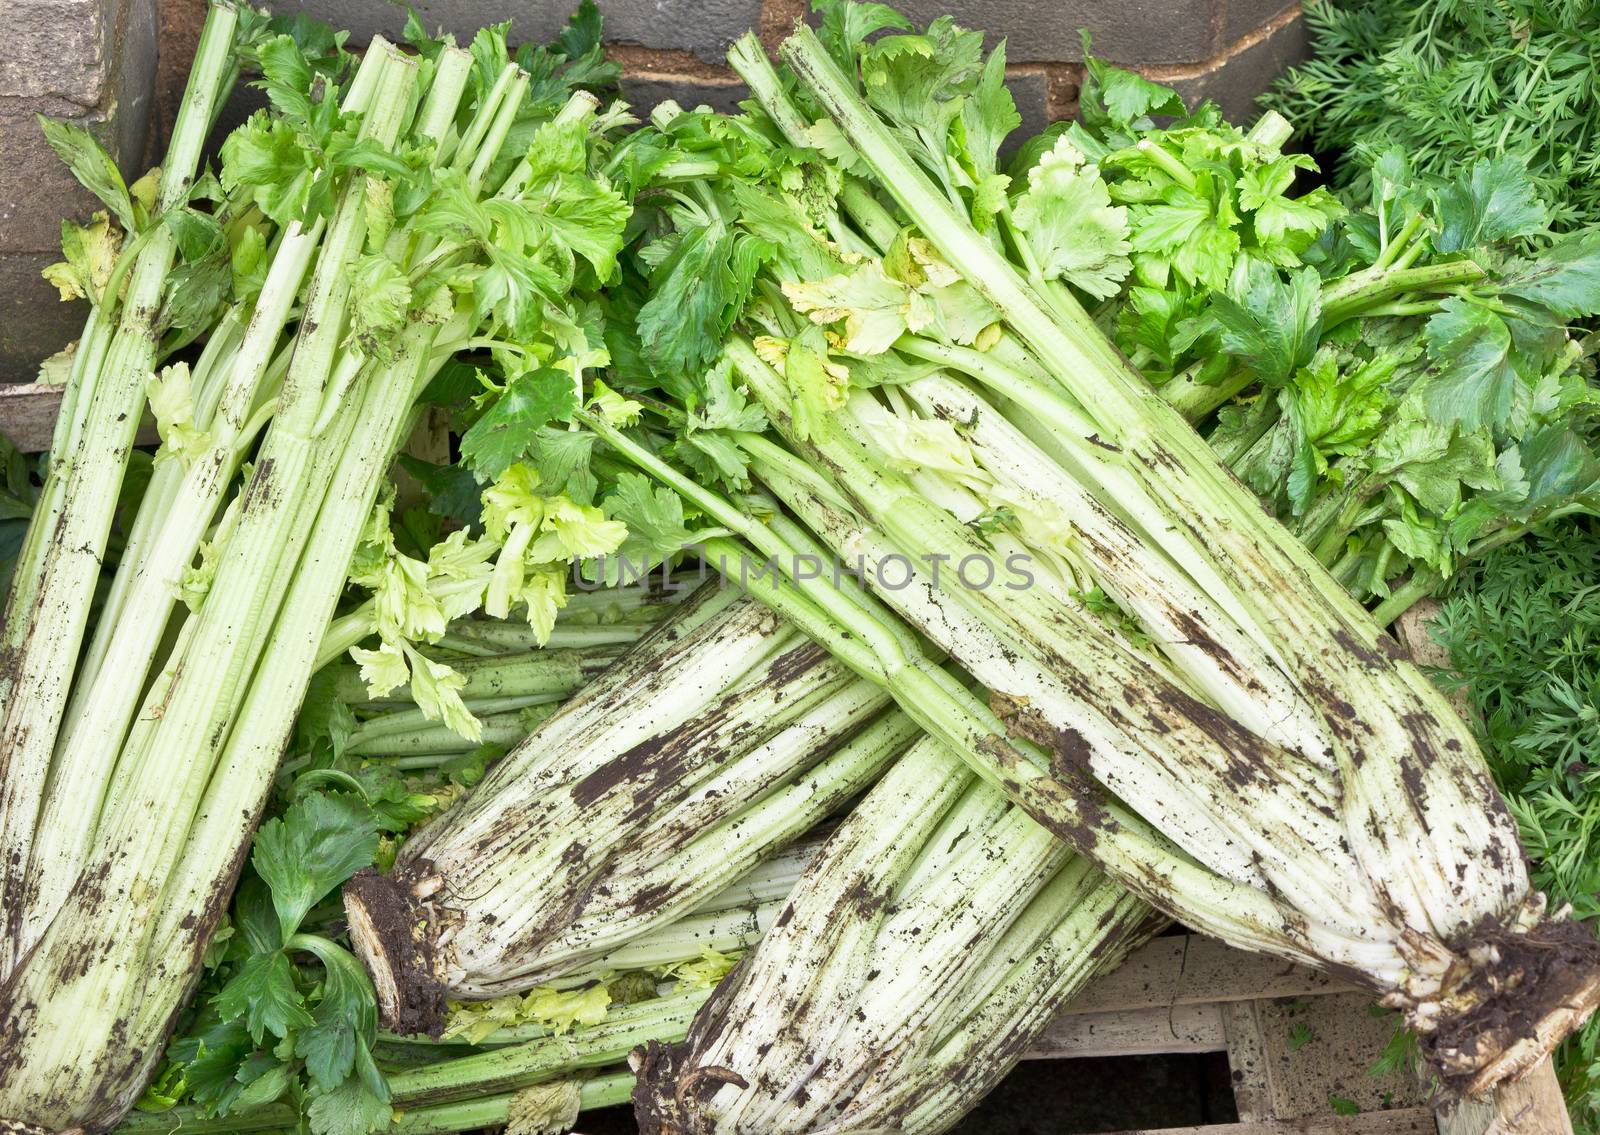 Freshly harvested celery at a market